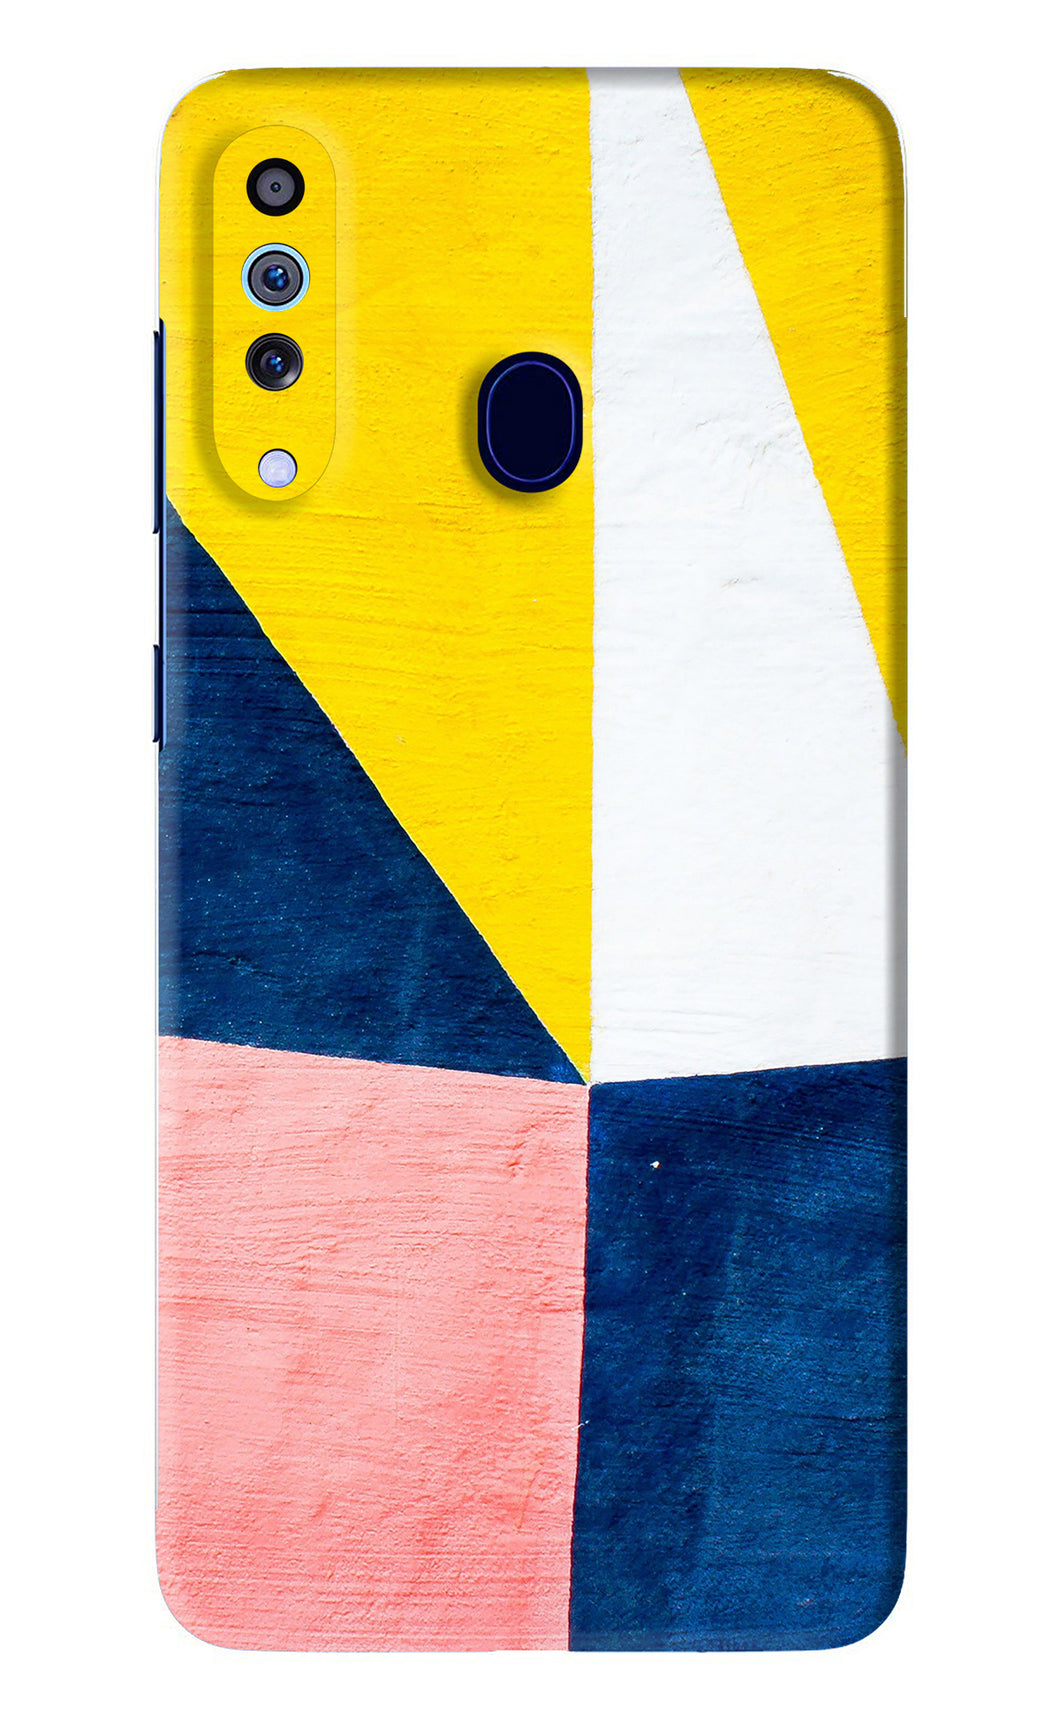 Colourful Art Samsung Galaxy M40 Back Skin Wrap